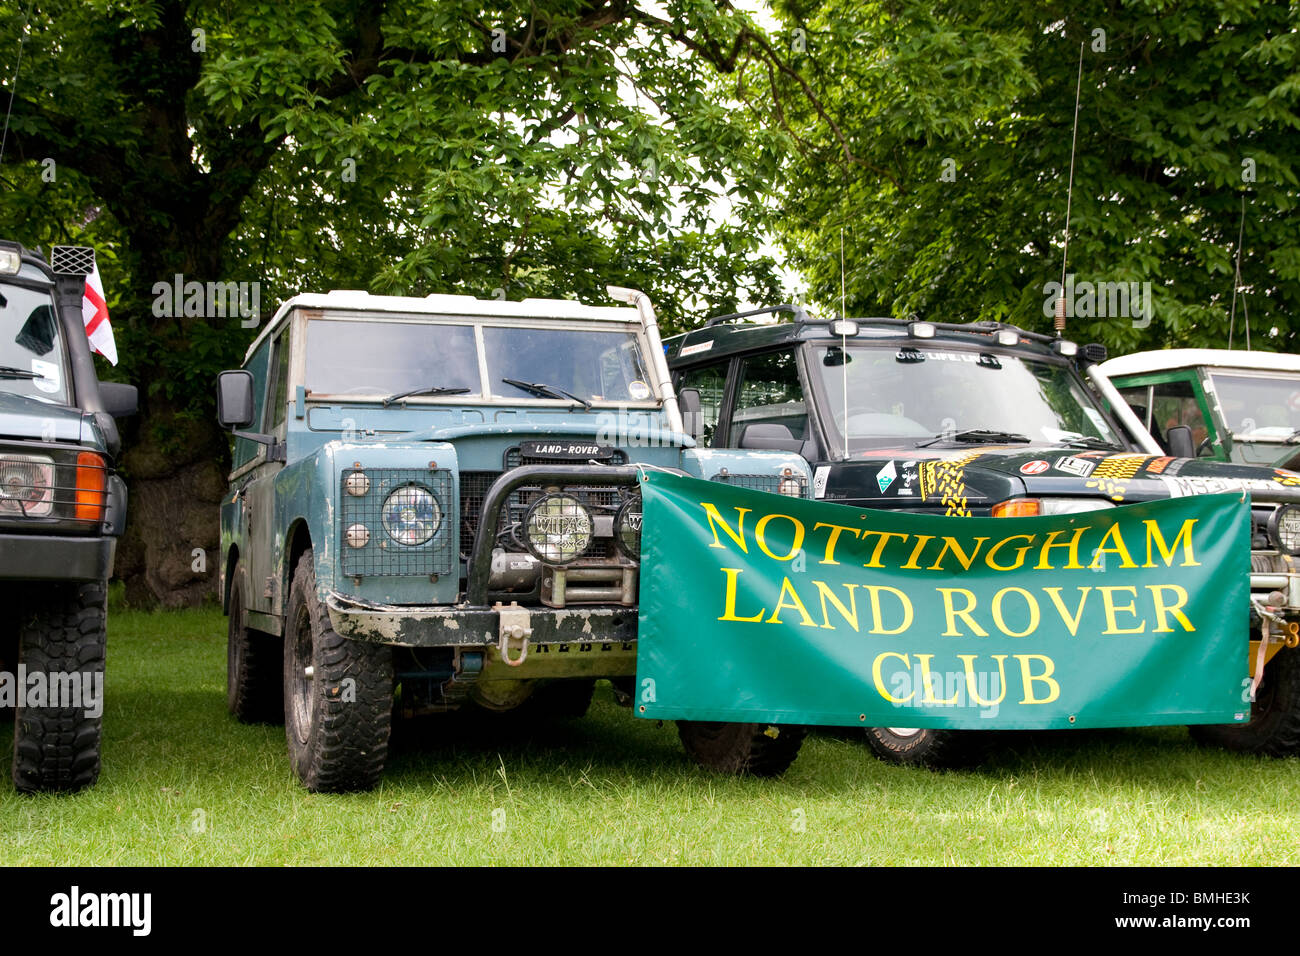 Land rover club Banque de photographies et d'images à haute résolution -  Alamy